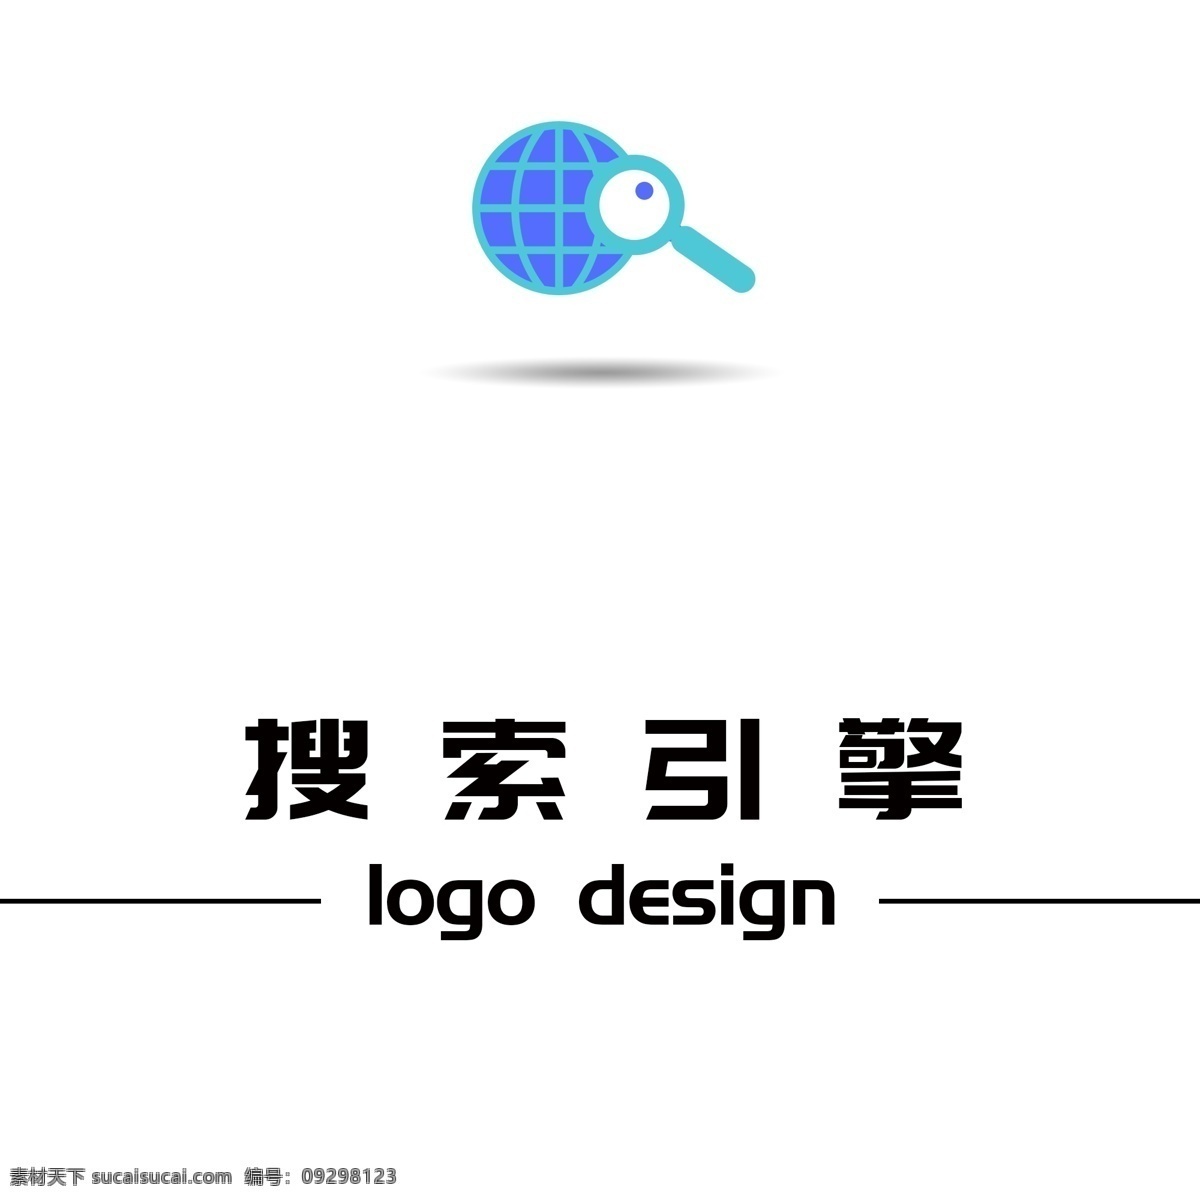 搜索引擎 logo logo设计 简约 创意